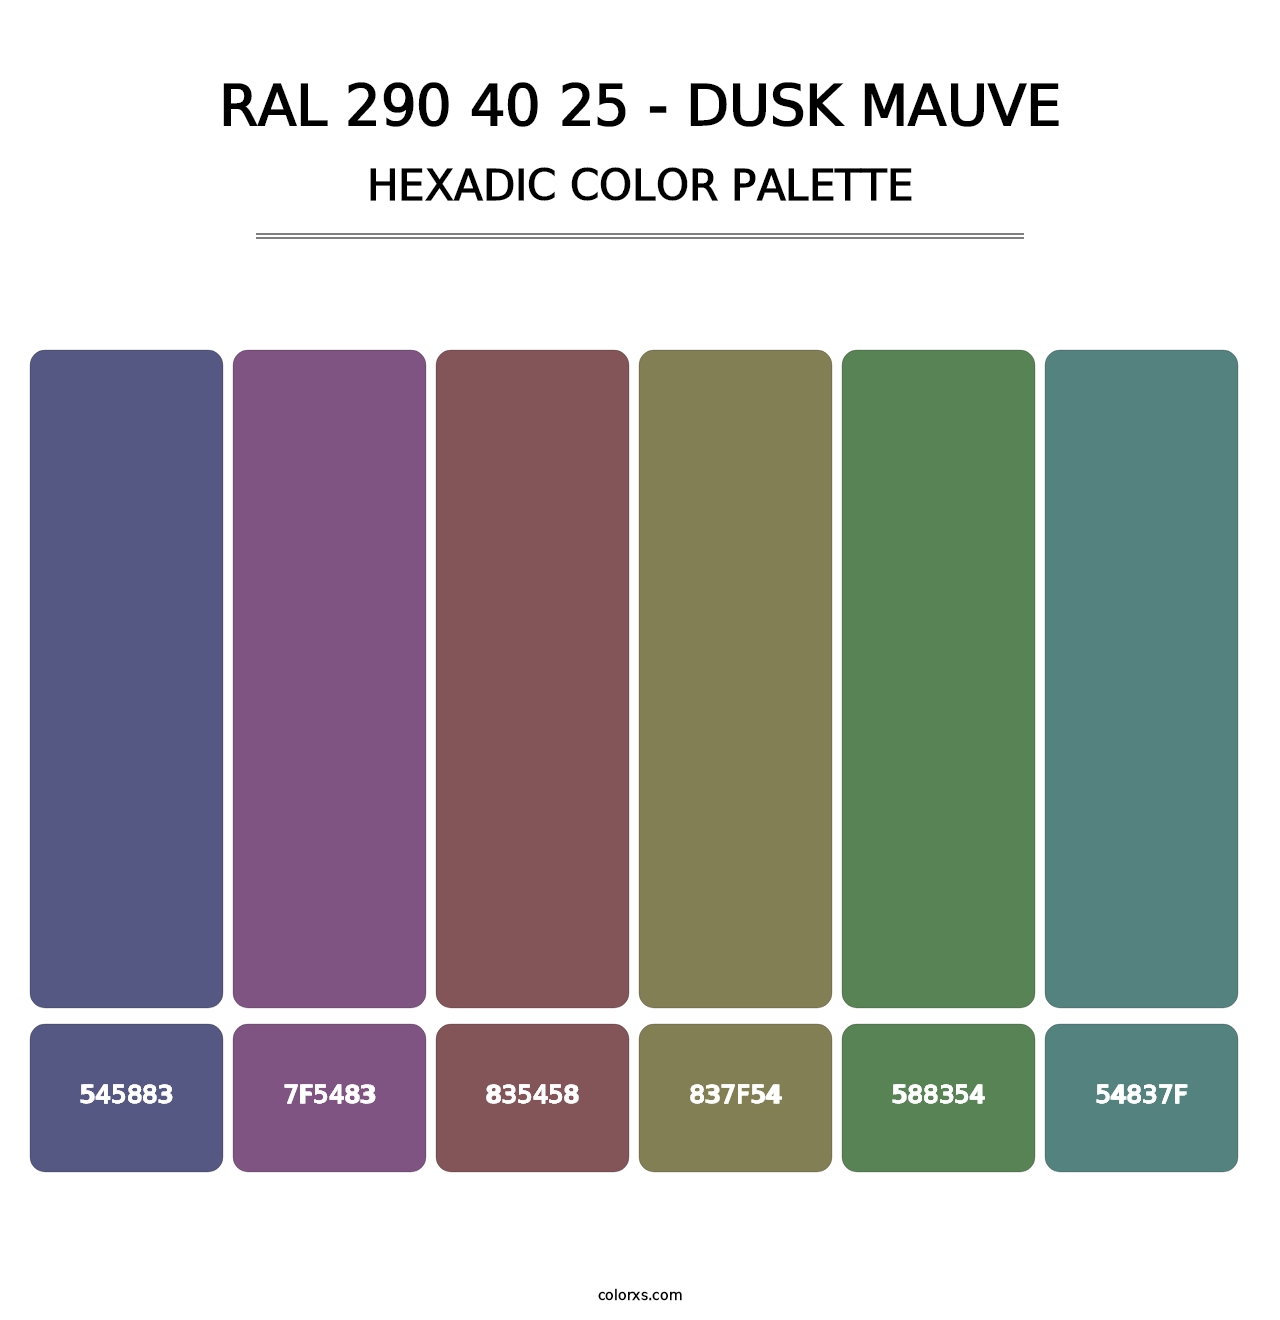 RAL 290 40 25 - Dusk Mauve - Hexadic Color Palette